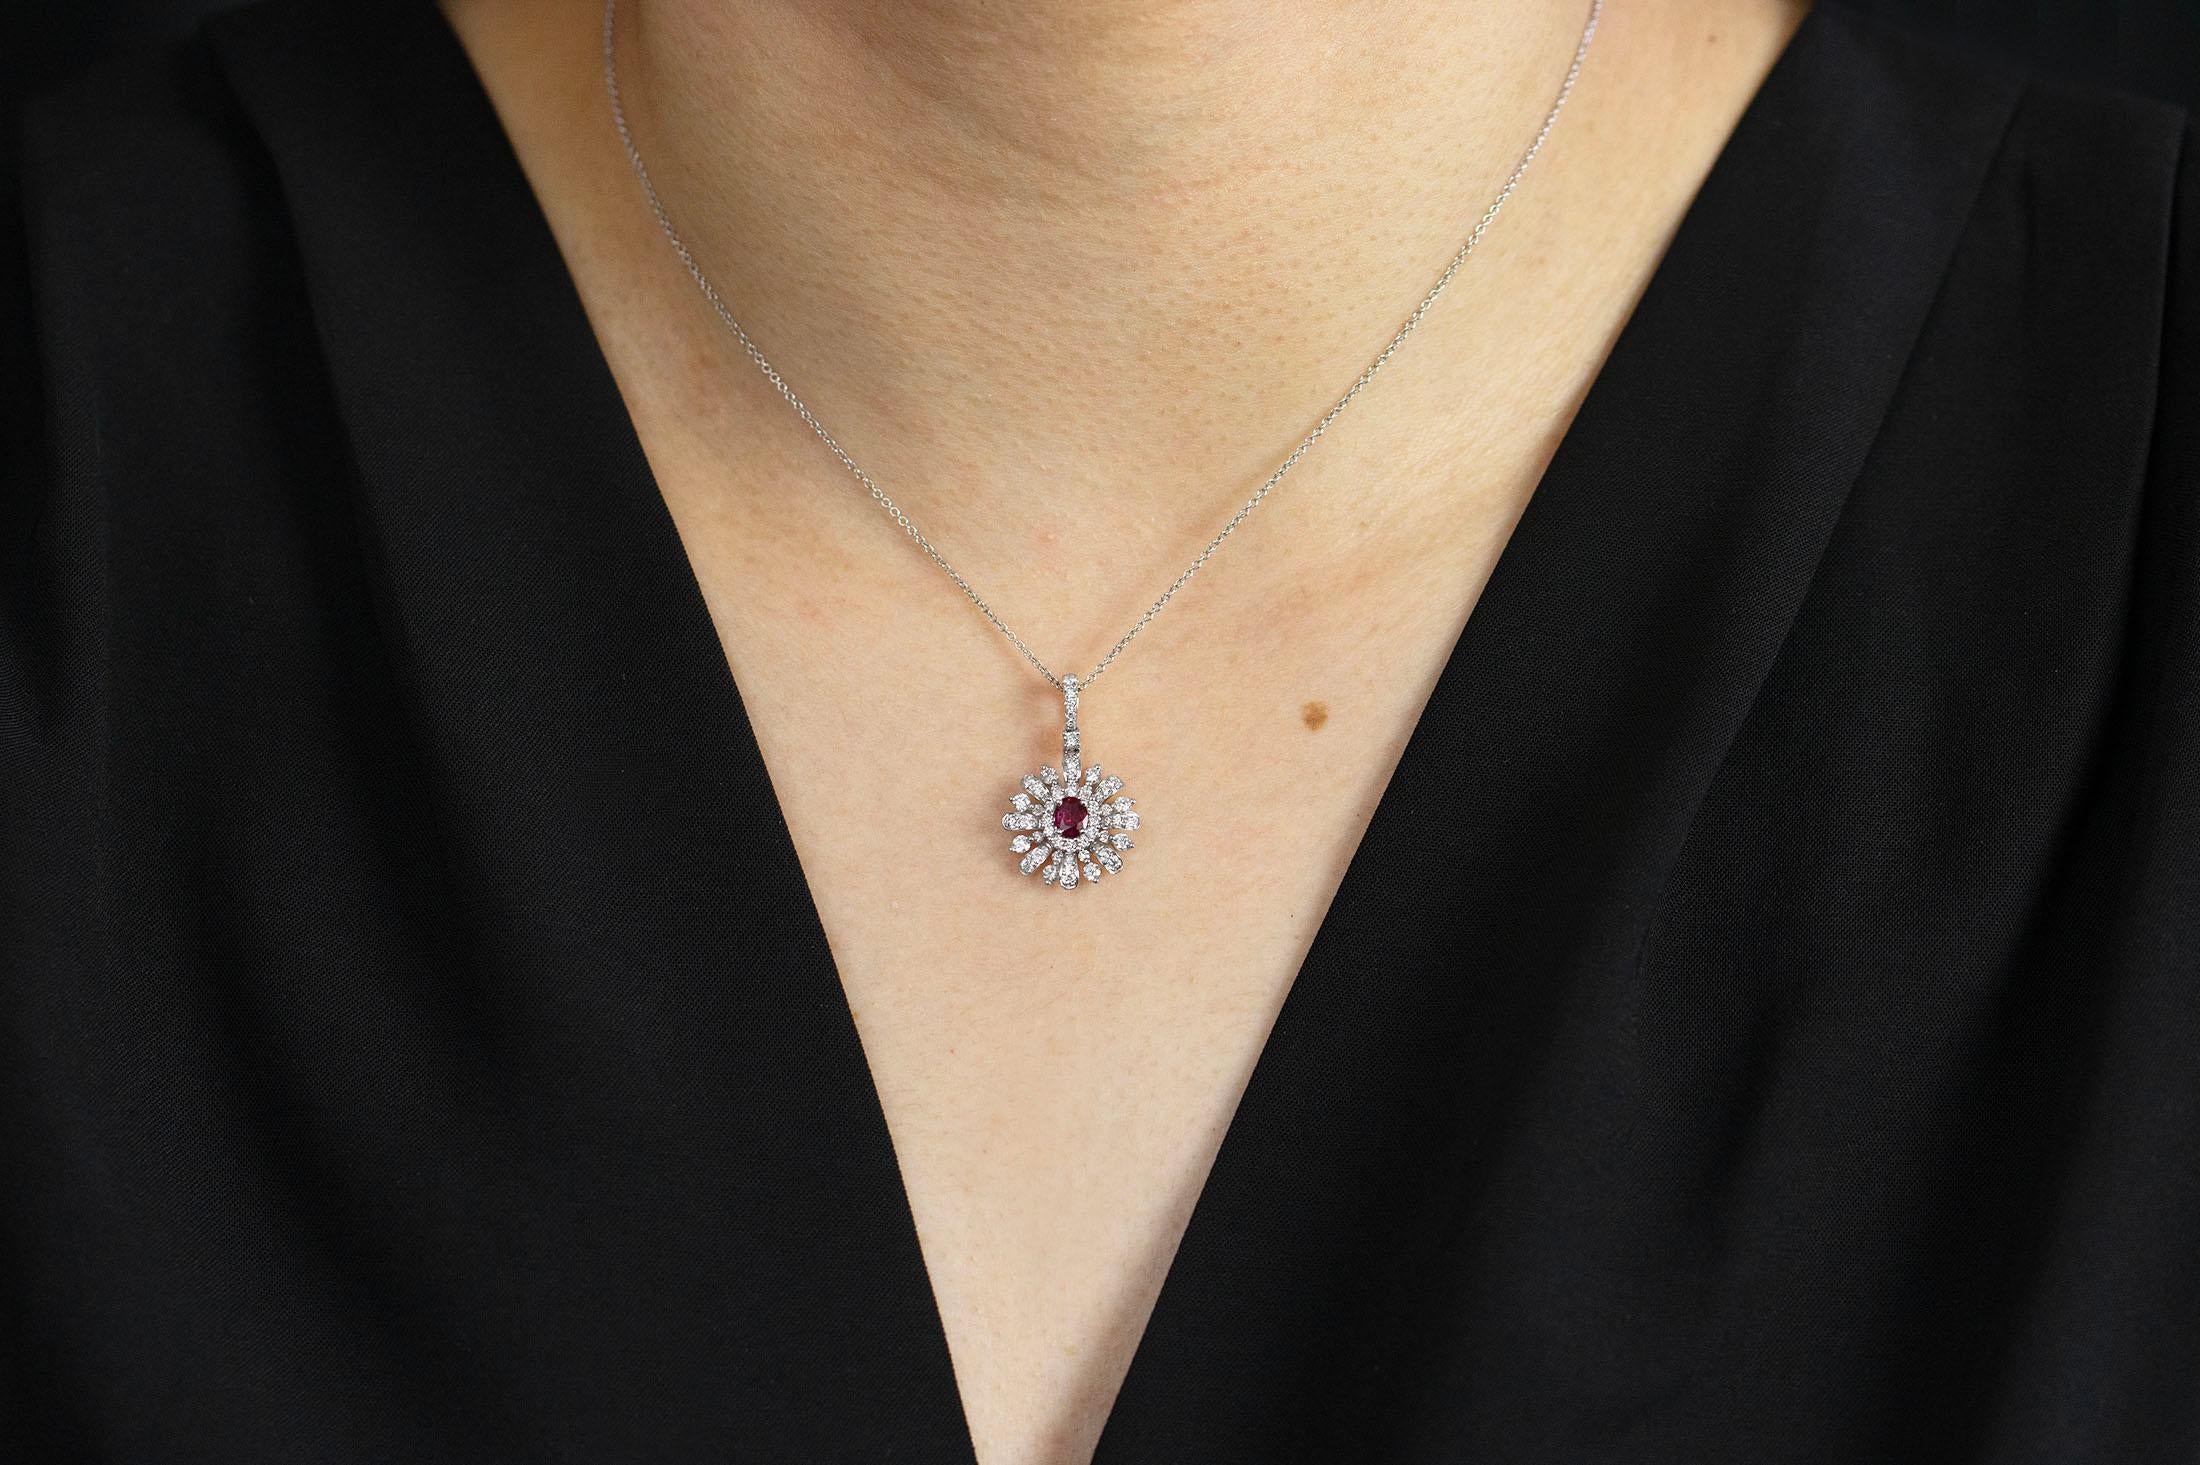 Un bijou à la mode et d'une grande beauté mettant en valeur un rubis ovale de 0,32 carats, riche en couleurs, serti dans un motif complexe en forme de soleil, accentué par des diamants ronds brillants. Les diamants pèsent 0.81 carats au total.